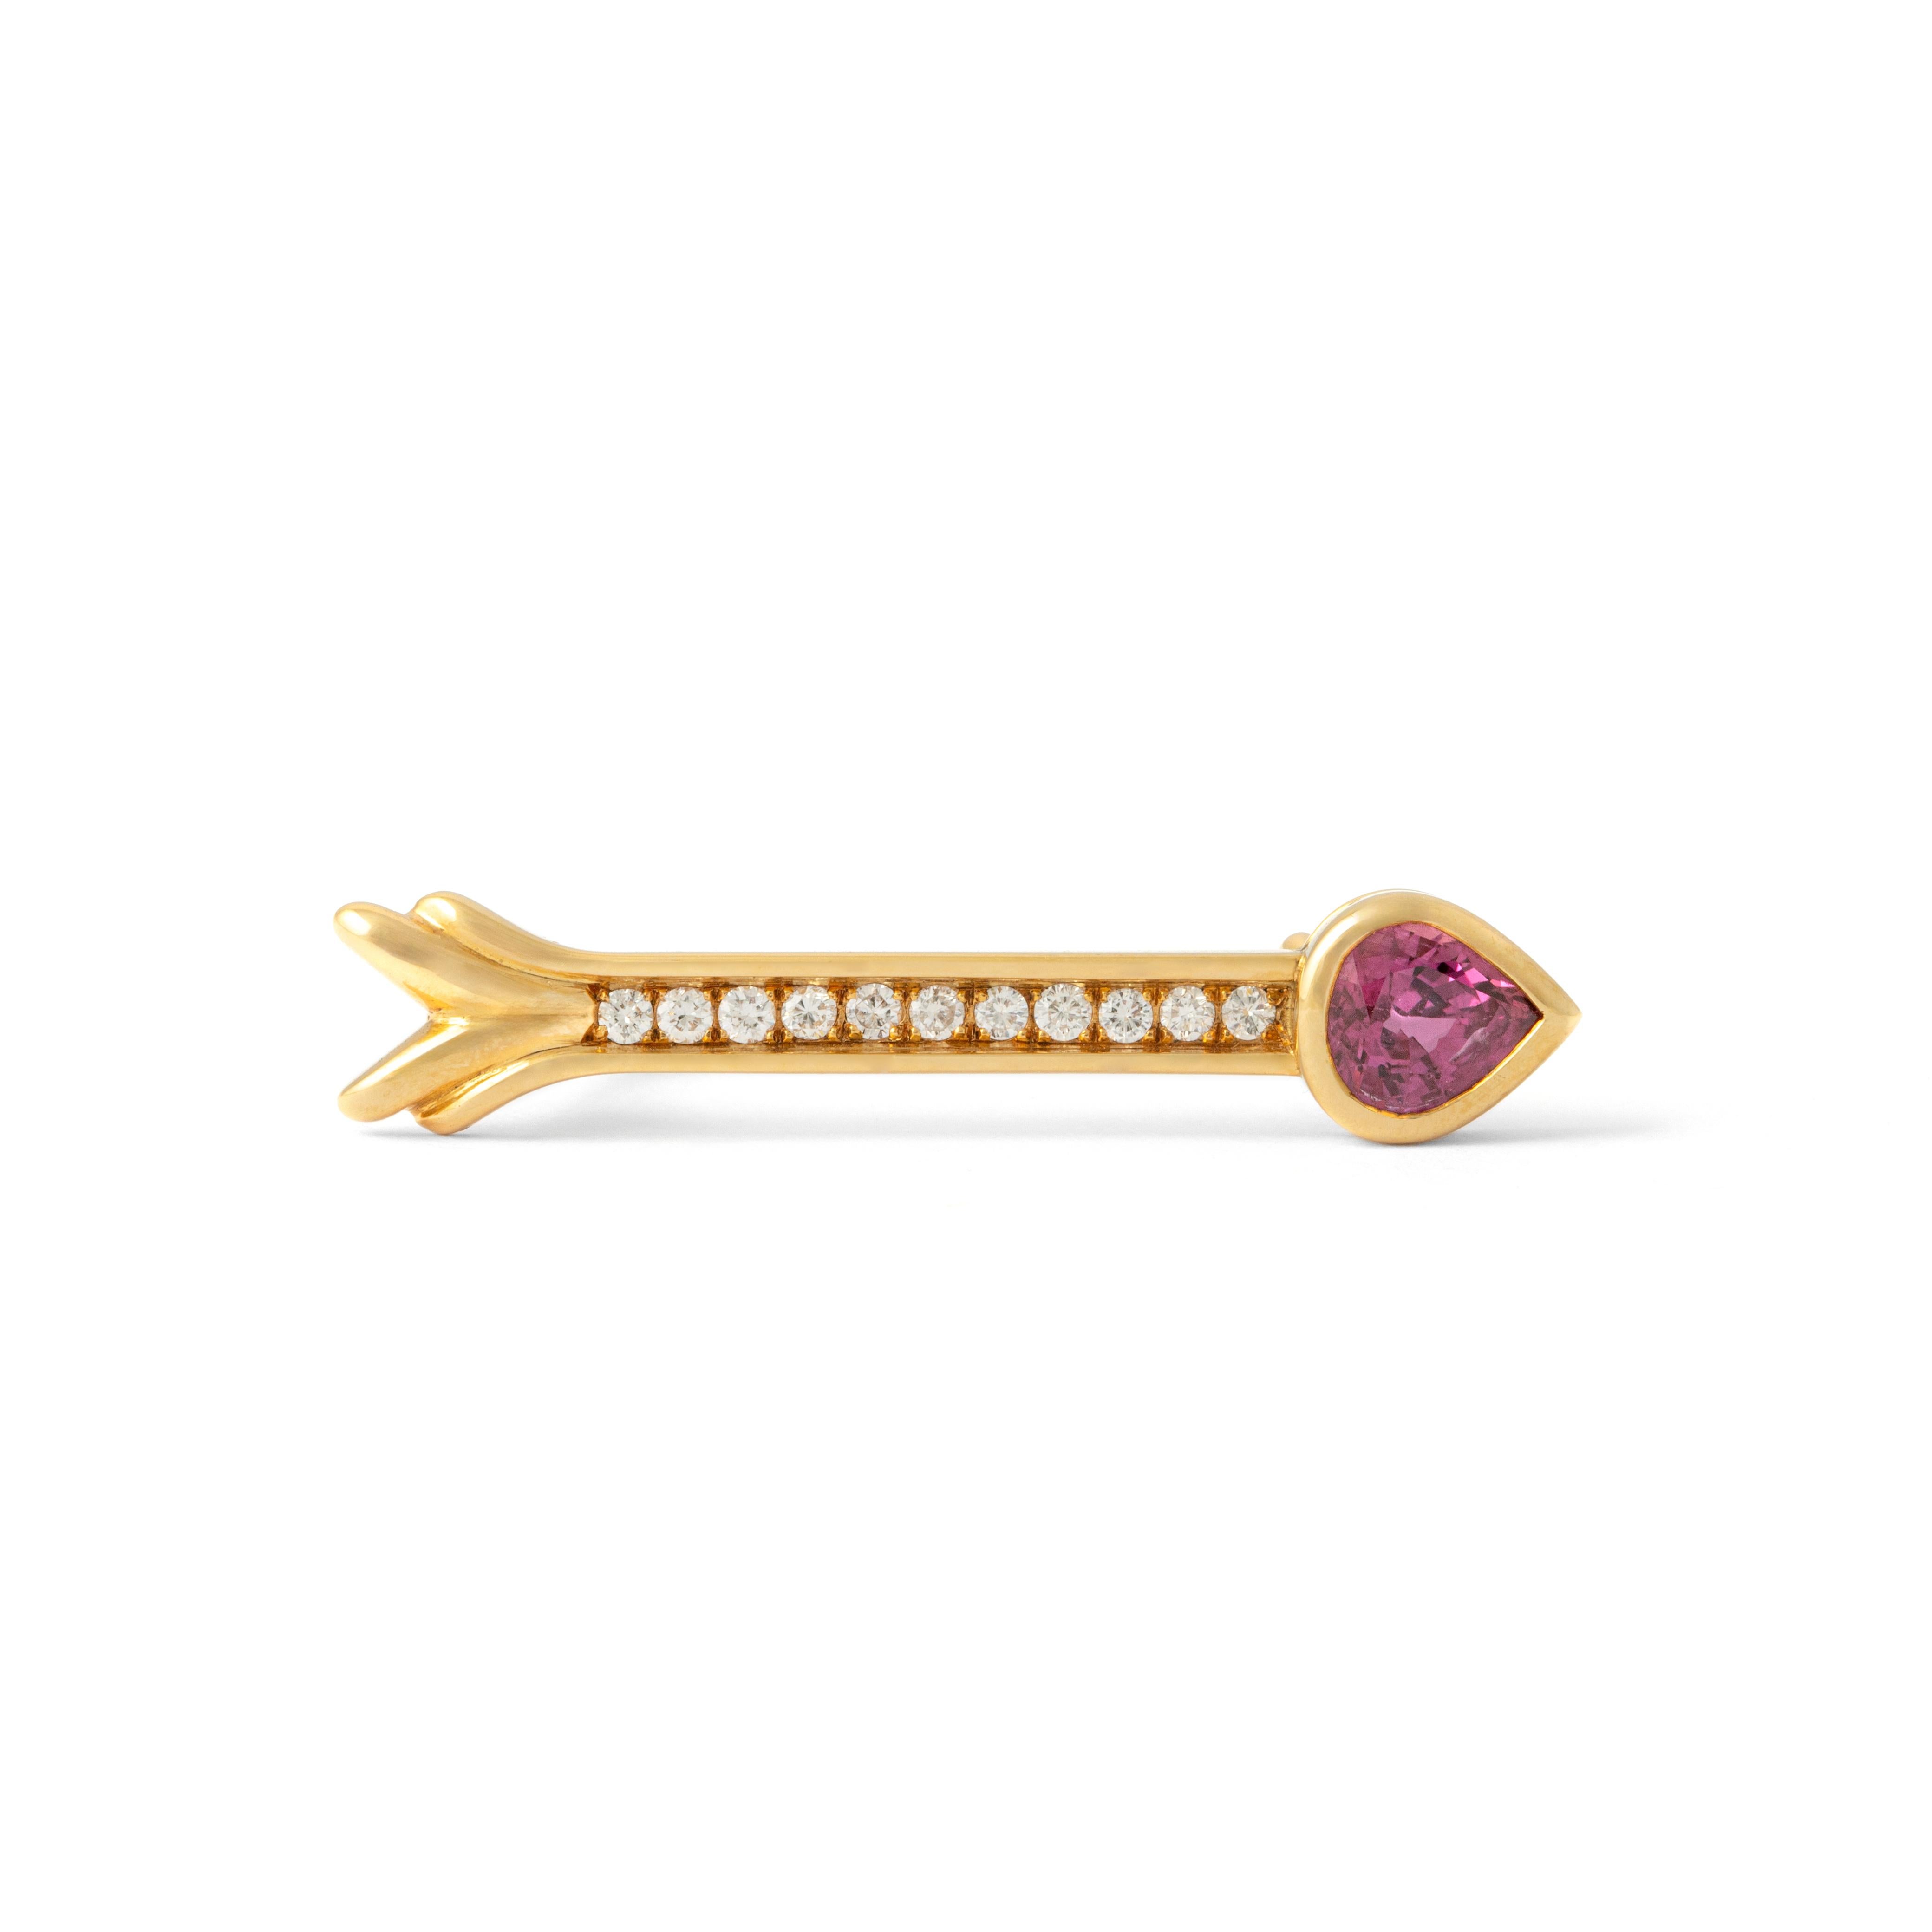 Unsere Rubin-Diamant-Gelbgold-Brosche (18 Karat) ist ein Symbol für auffallende Eleganz und Präzision. Diese Brosche, die mit akribischer Kunstfertigkeit gefertigt wurde, zeigt in ihrem Zentrum einen leuchtenden Rubin von 1,26 Karat, der